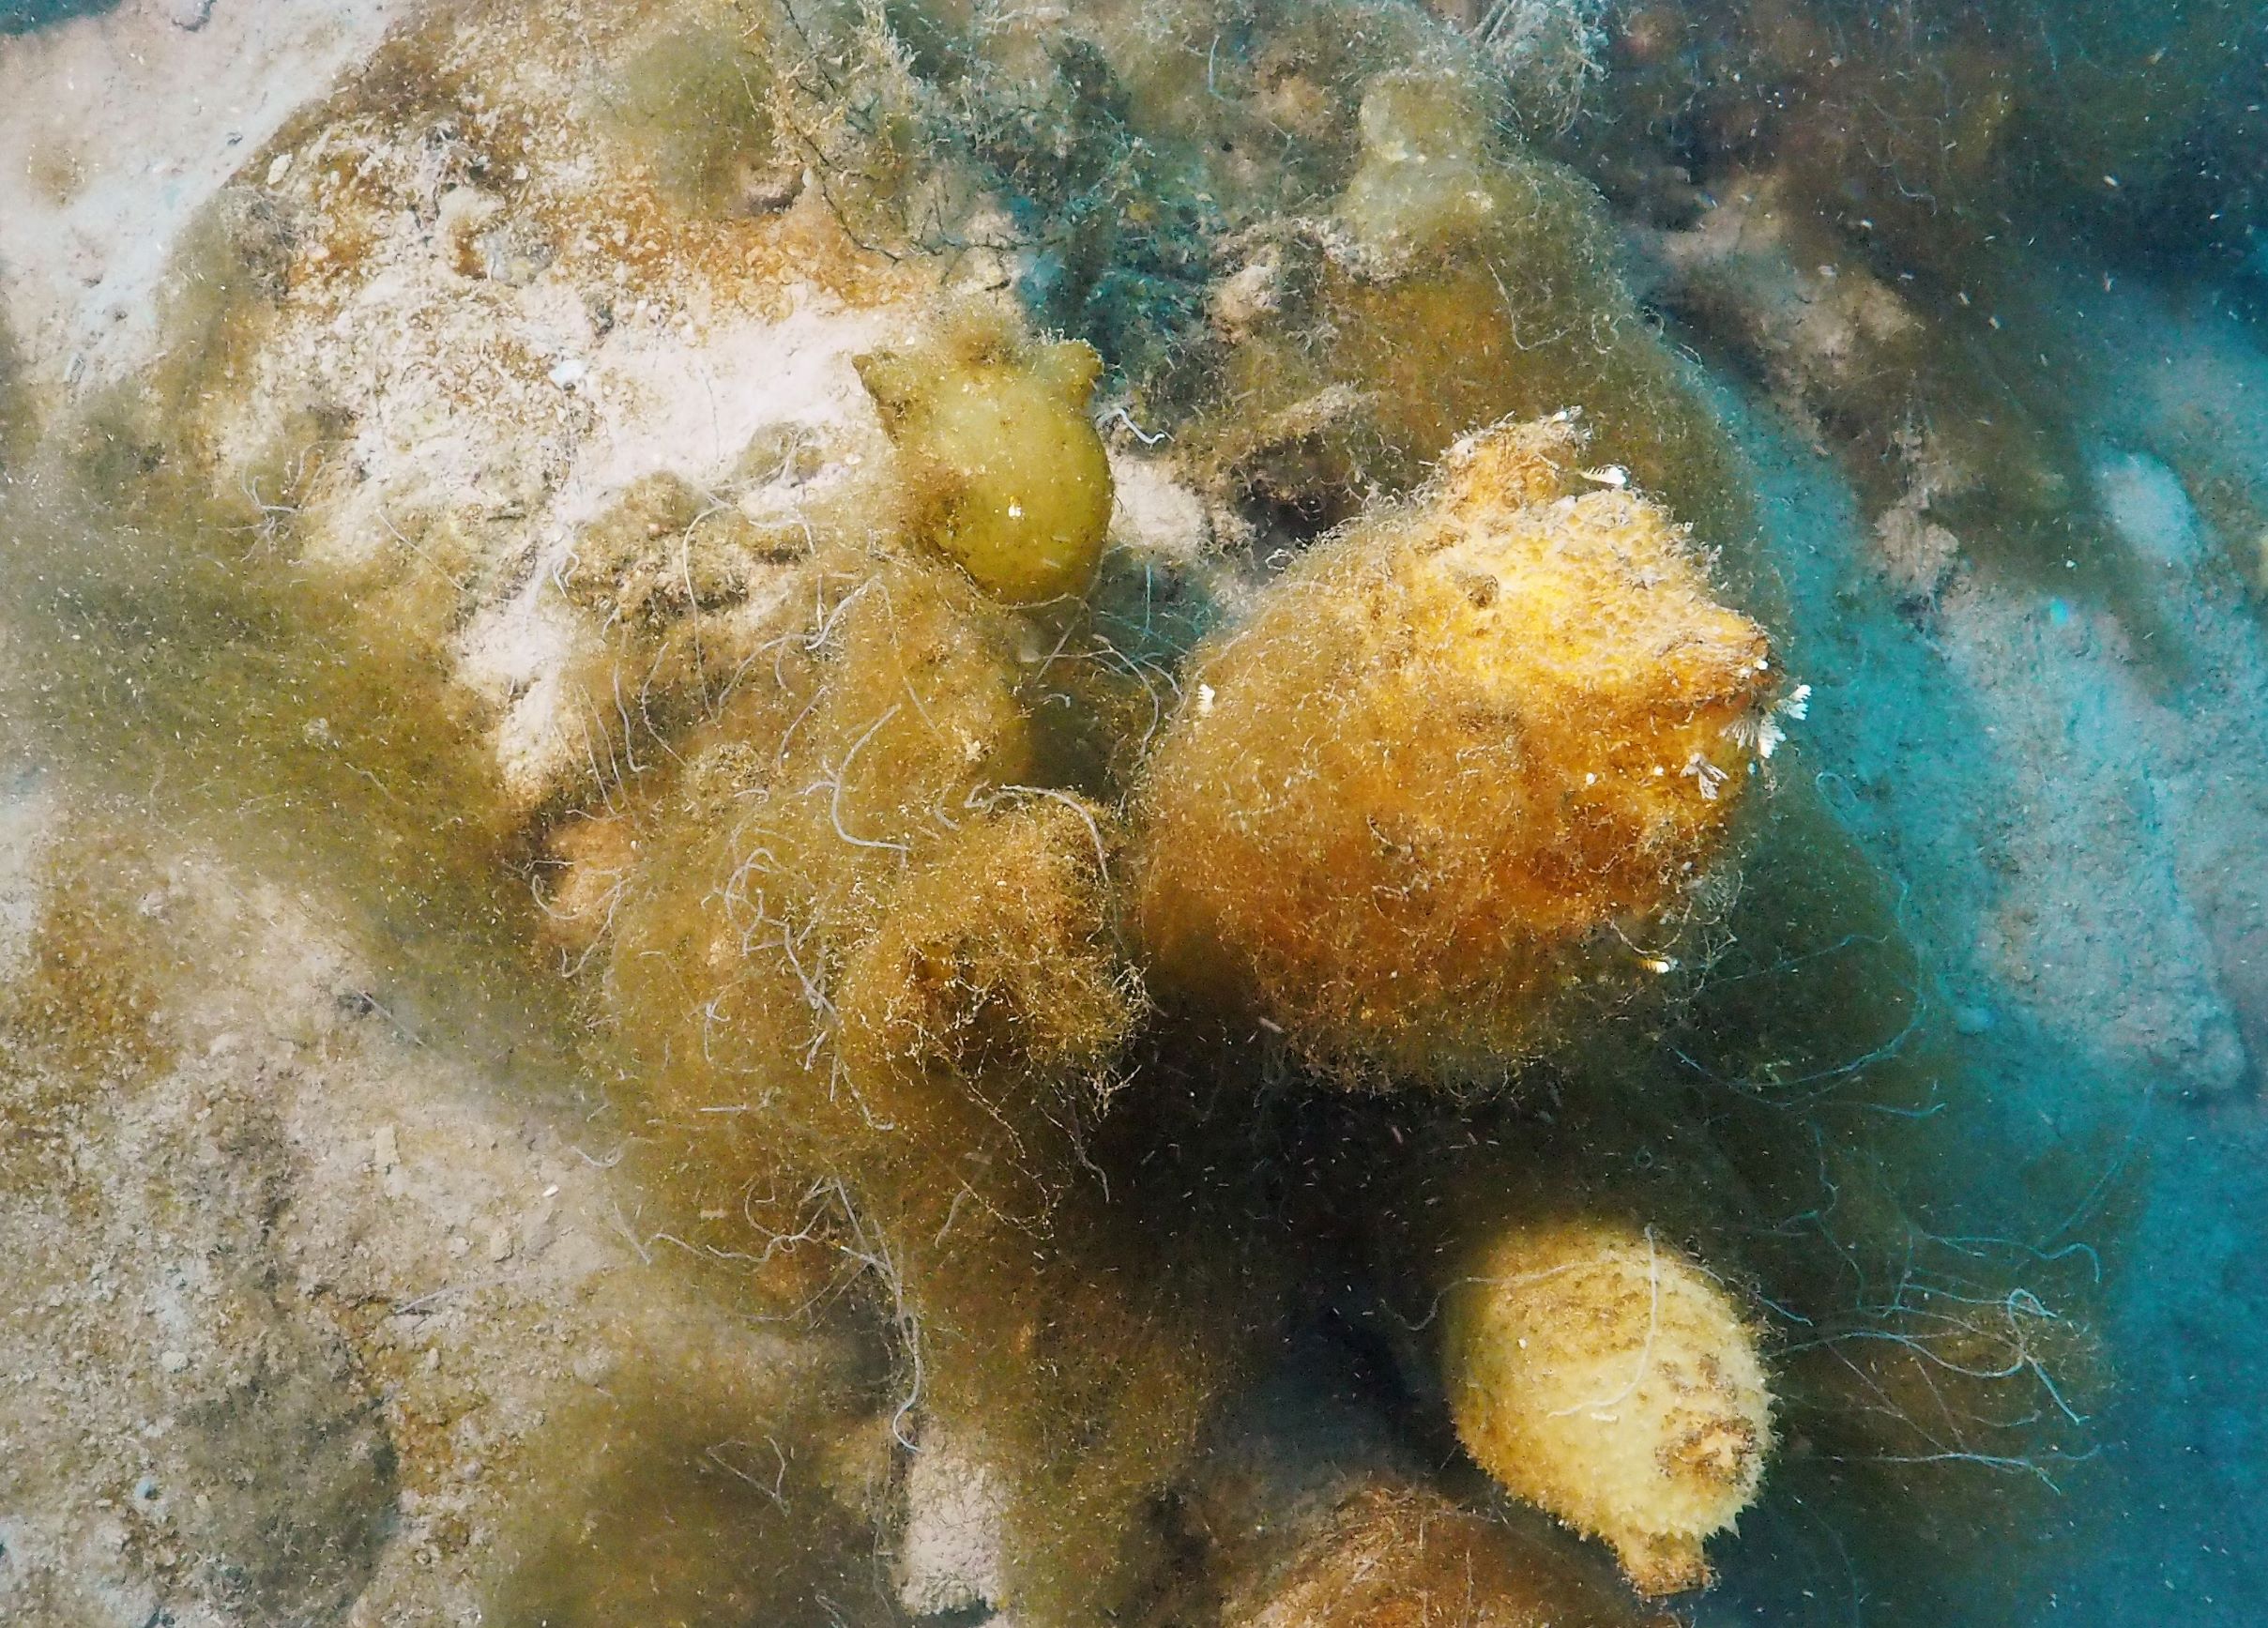 Las ascidias, un grupo de animales marinos, responden negativamente los efectos del cambio climático en la Antártida